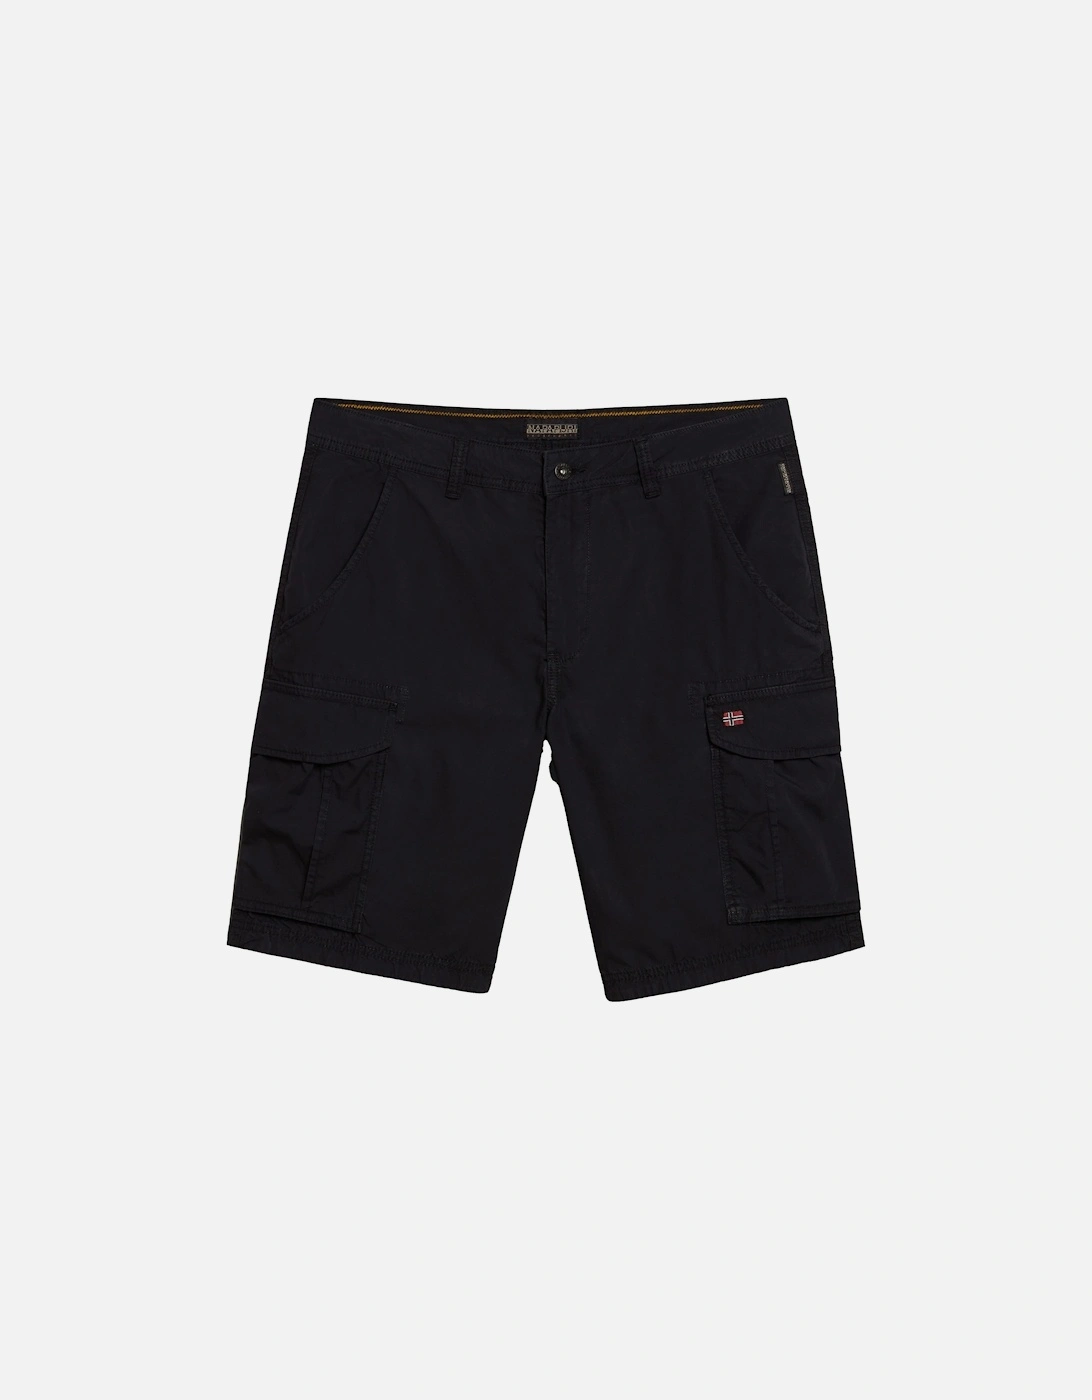 Mens Noto 2.0 Shorts (Black), 8 of 7